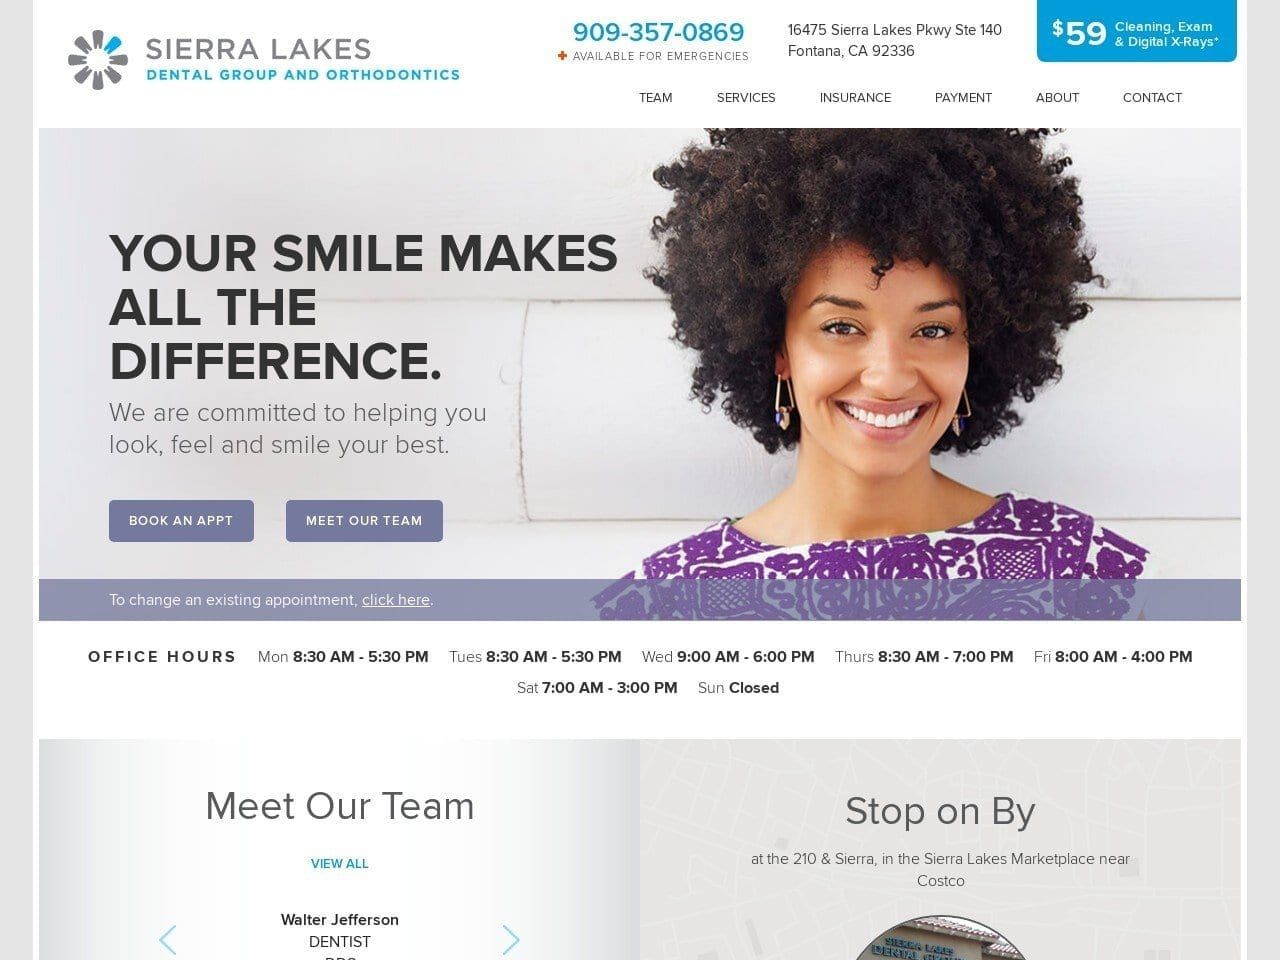 Sierra Lakes Dental Group Website Screenshot from sierralakesdental.com